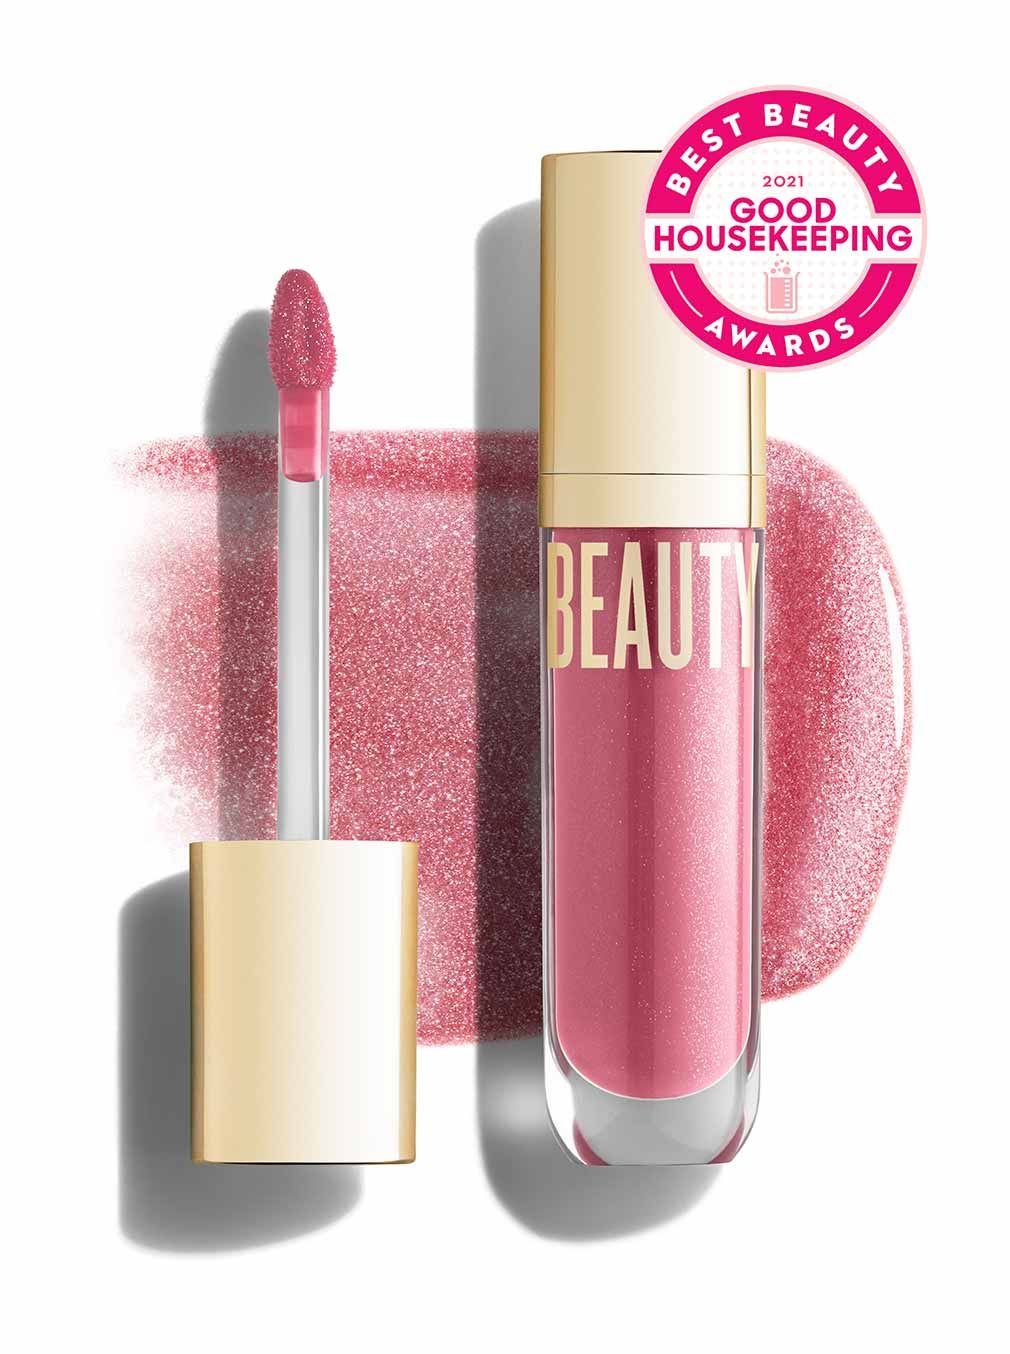 Beyond Gloss - Beautycounter - Skin Care, Makeup, Bath and Body and more! | Beautycounter.com